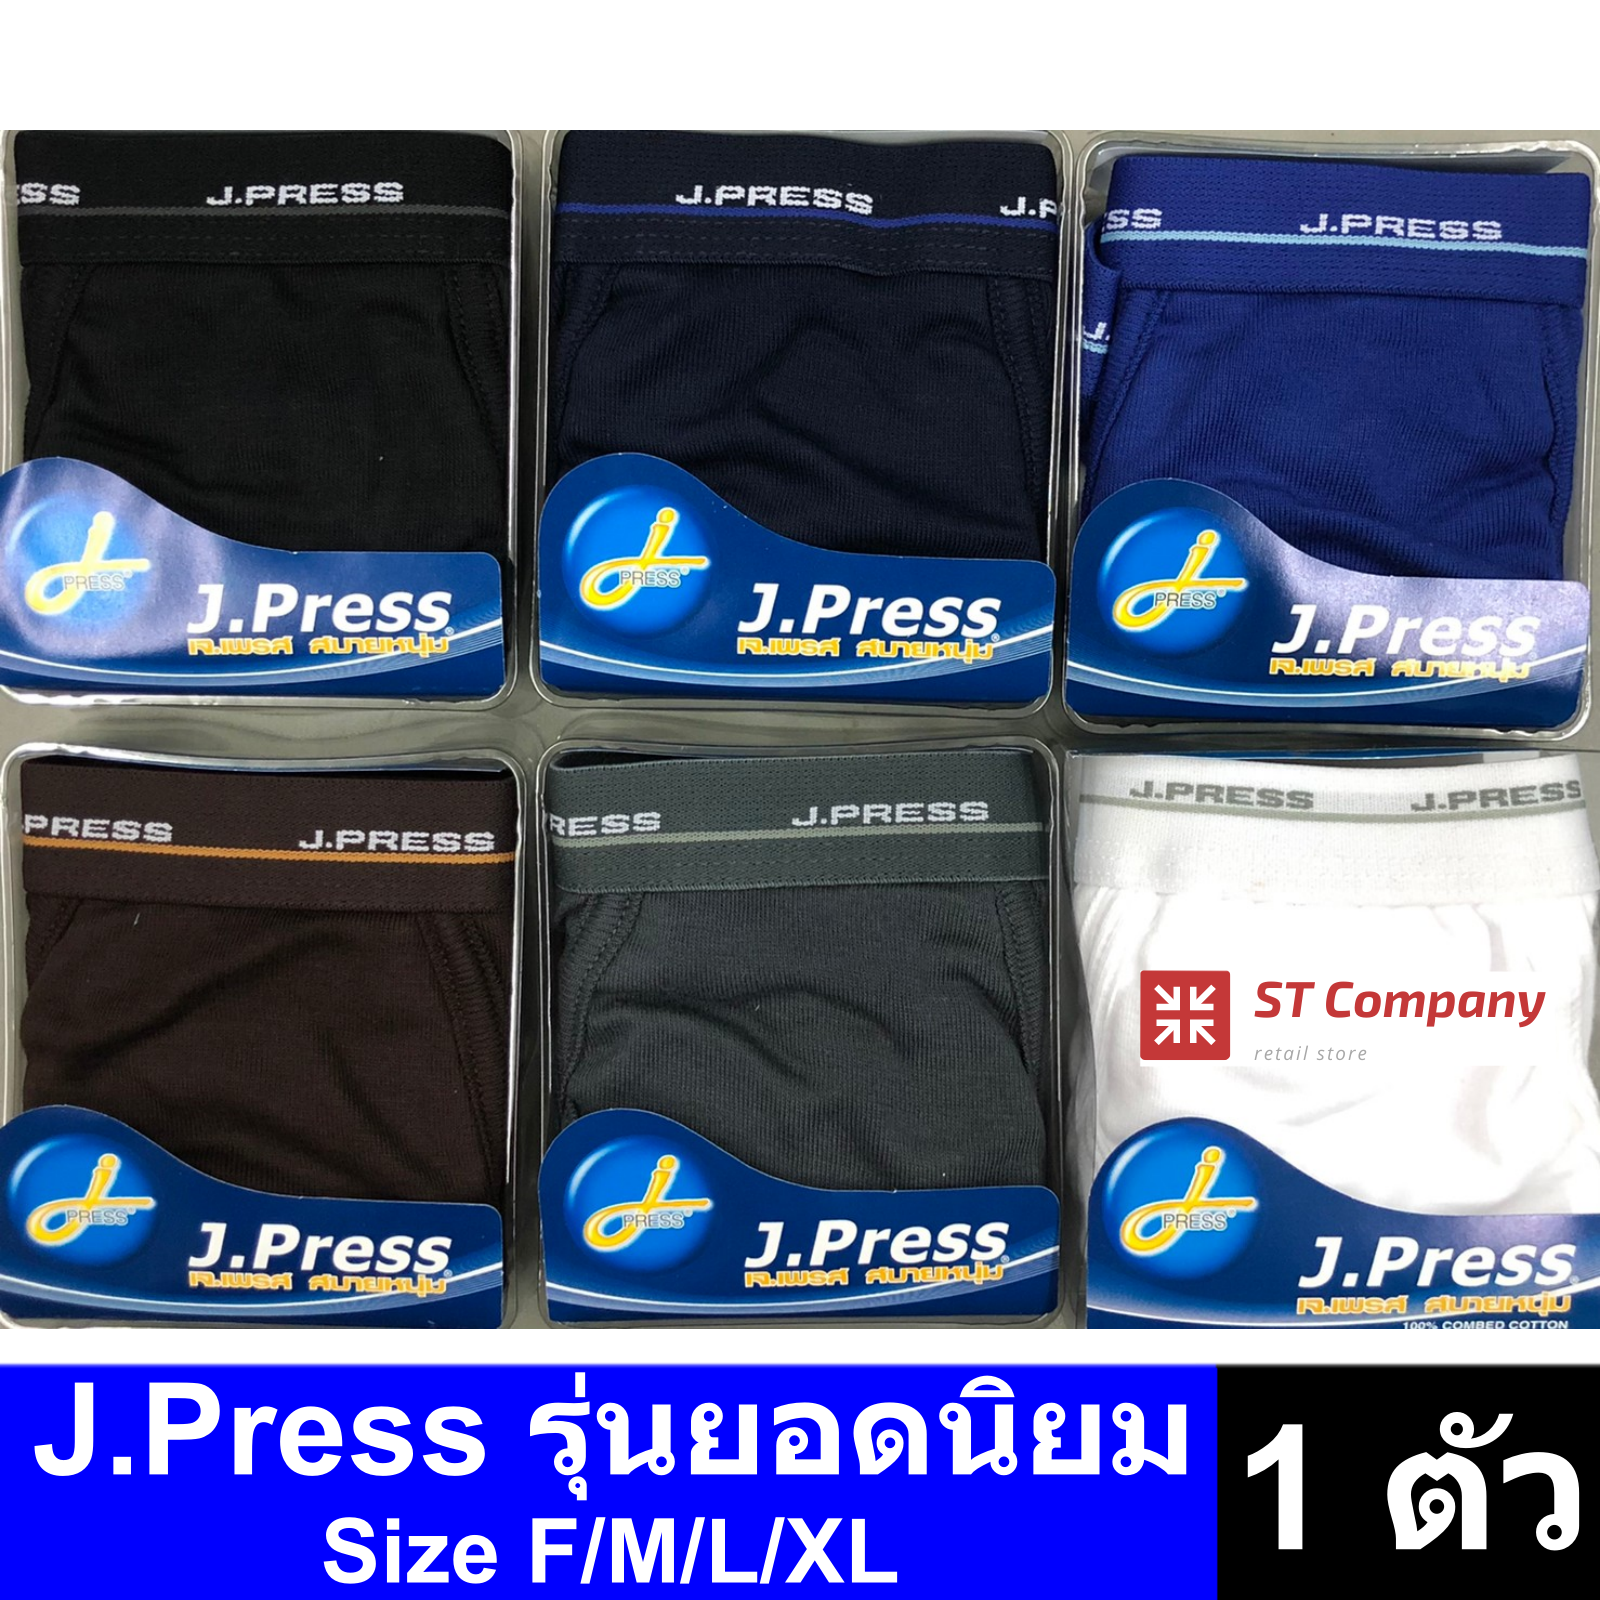 J.Press กางเกงในชาย (1 ตัว) แบบเปิดเป้า ใส่สบาย รุ่นยอดนิยม มี 6 สีให้เลือก รุ่น 1200 ไซส์ใหญ่ ตัวใหญ่ XXL 2XL 3XL XXXL กางเกงใน ชาย J Press เจเพรส เจเพลส